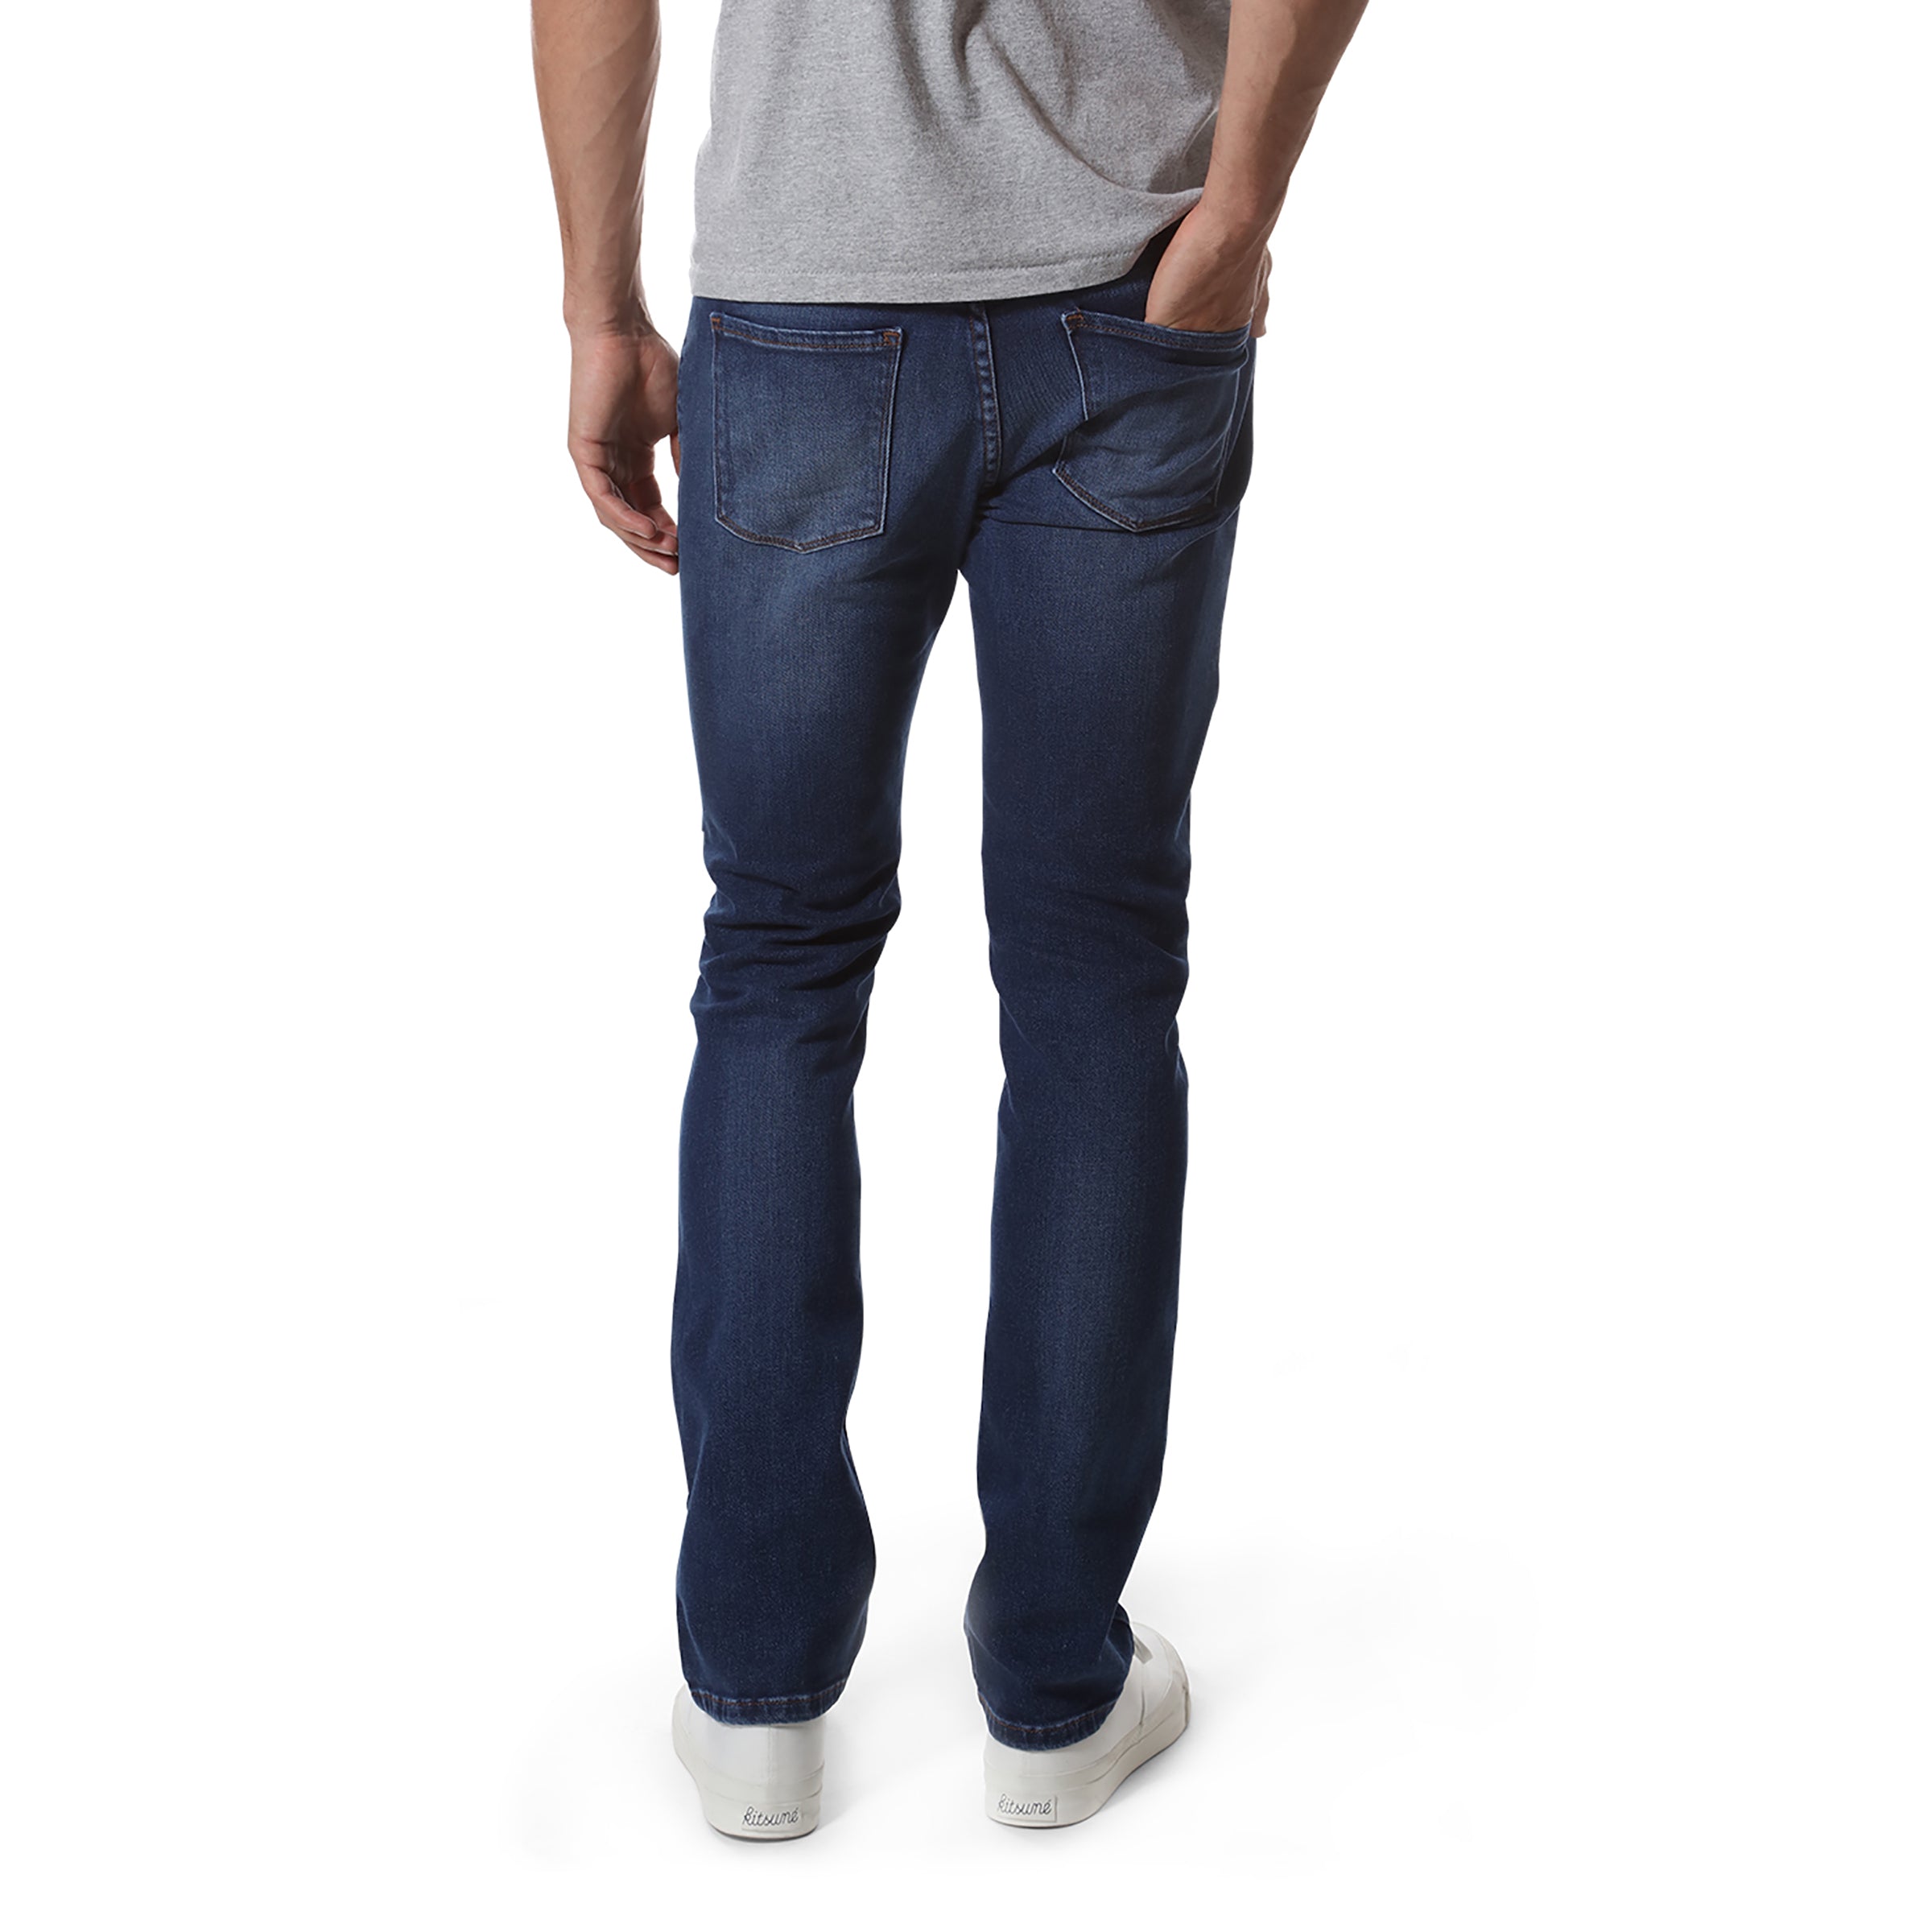 Men wearing Bleu clair/Médium Slim Oliver Jeans